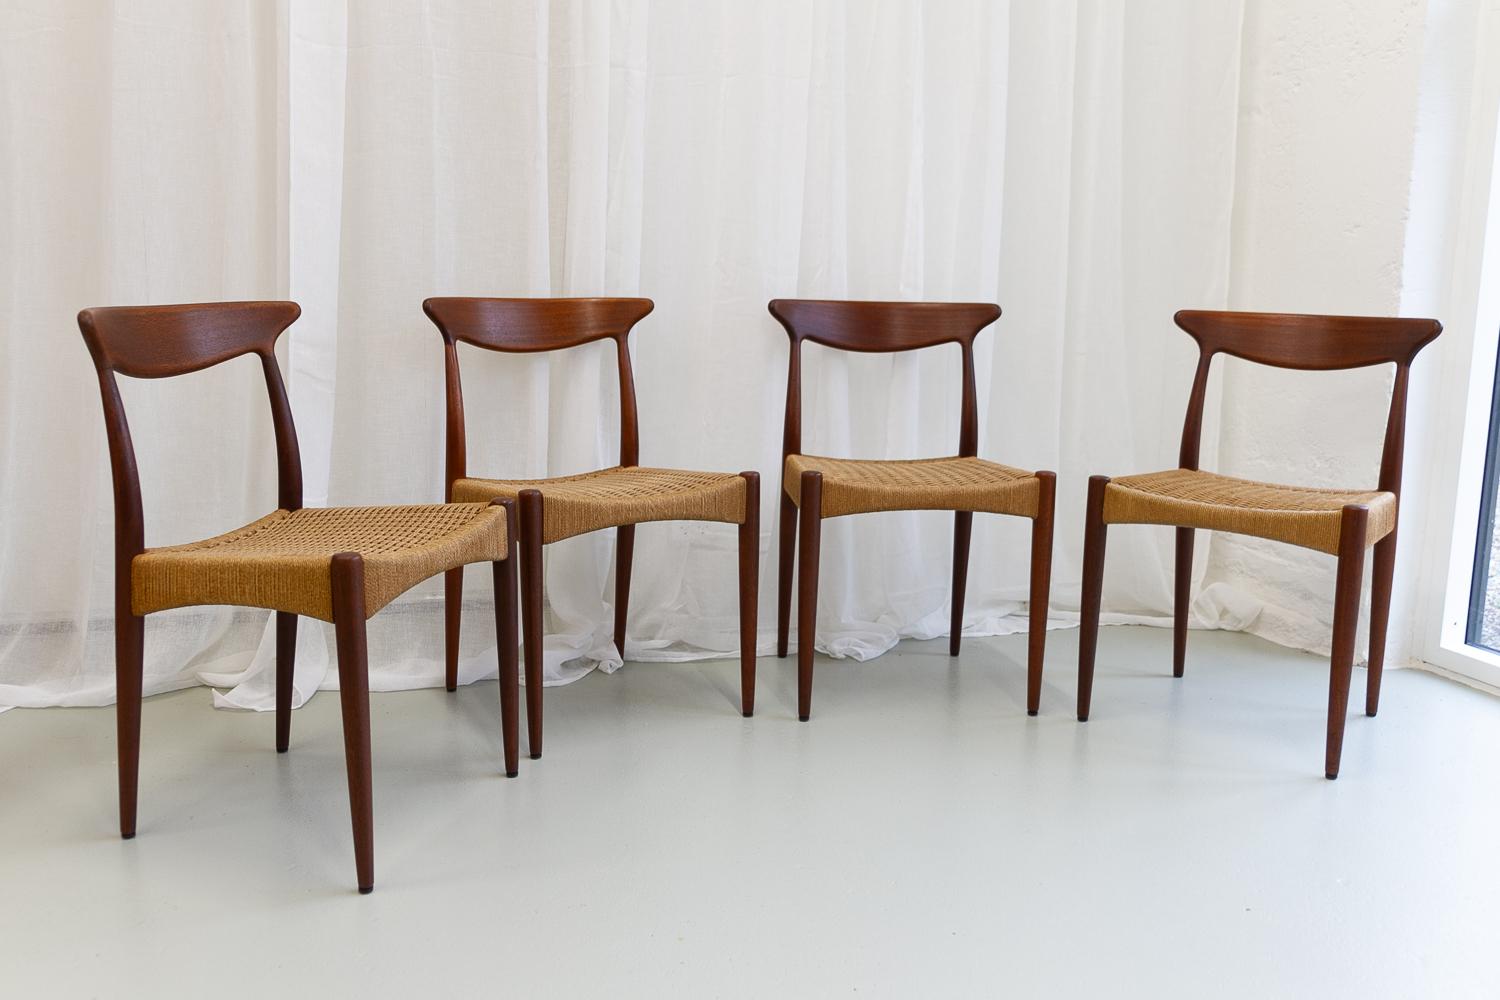 Chaises modernes danoises en teck par Arne Hovmand-Olsen pour Mogens Kold, Danemark, années 1950. Ensemble de 4 pièces
Chaises de salle à manger élégantes et sculpturales en teck massif avec assise en corde de papier d'origine. Conçu en 1951 comme